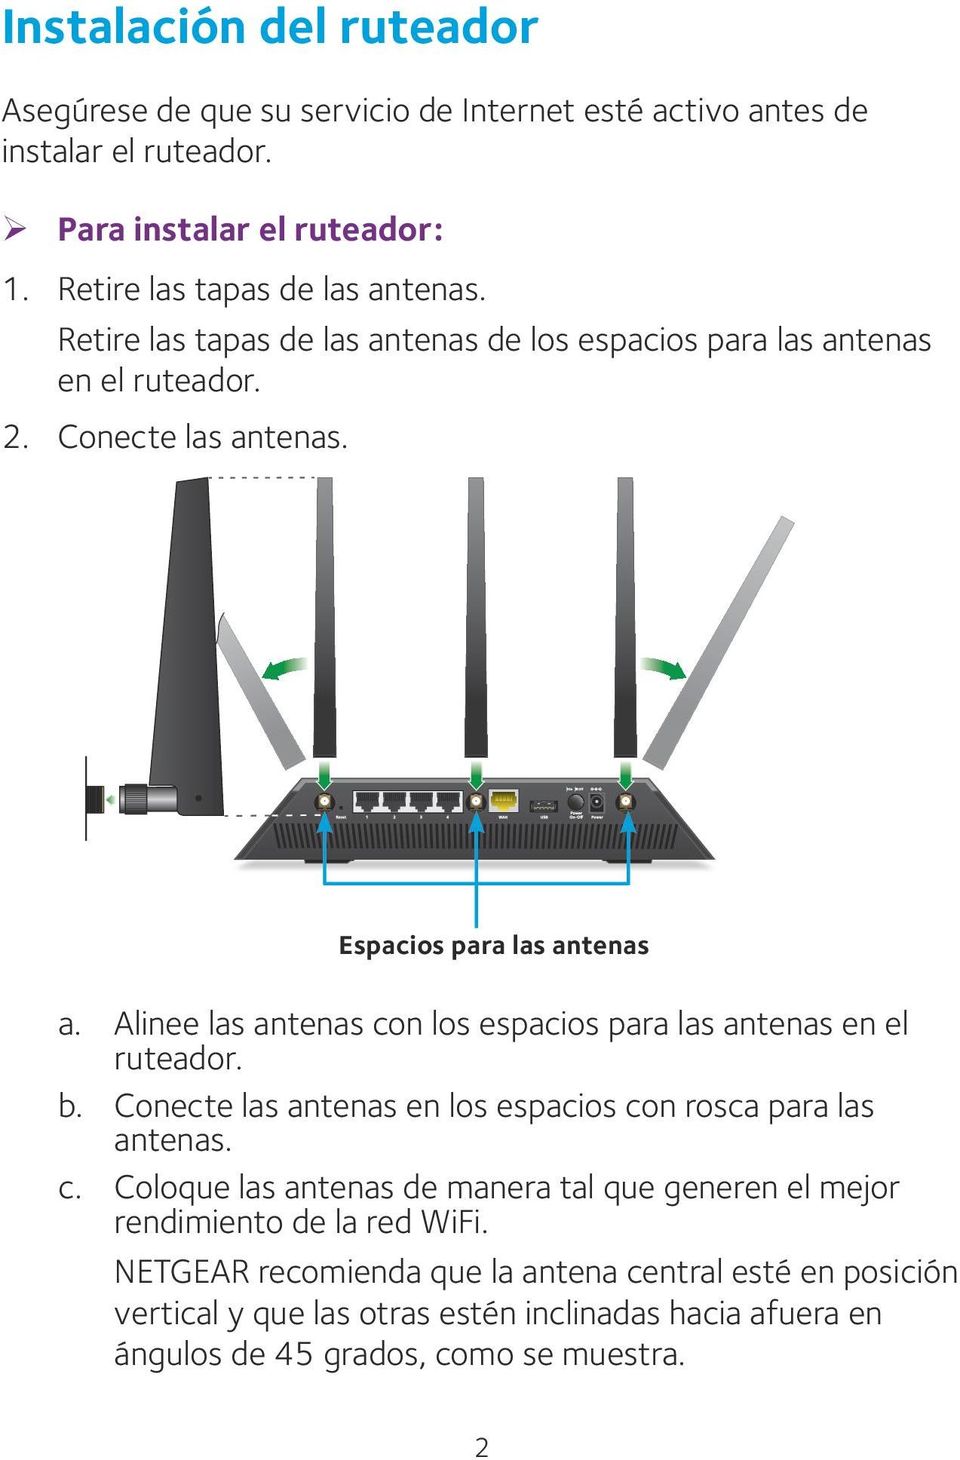 Alinee las antenas con los espacios para las antenas en el ruteador. b. Conecte las antenas en los espacios con rosca para las antenas. c. Coloque las antenas de manera tal que generen el mejor rendimiento de la red WiFi.